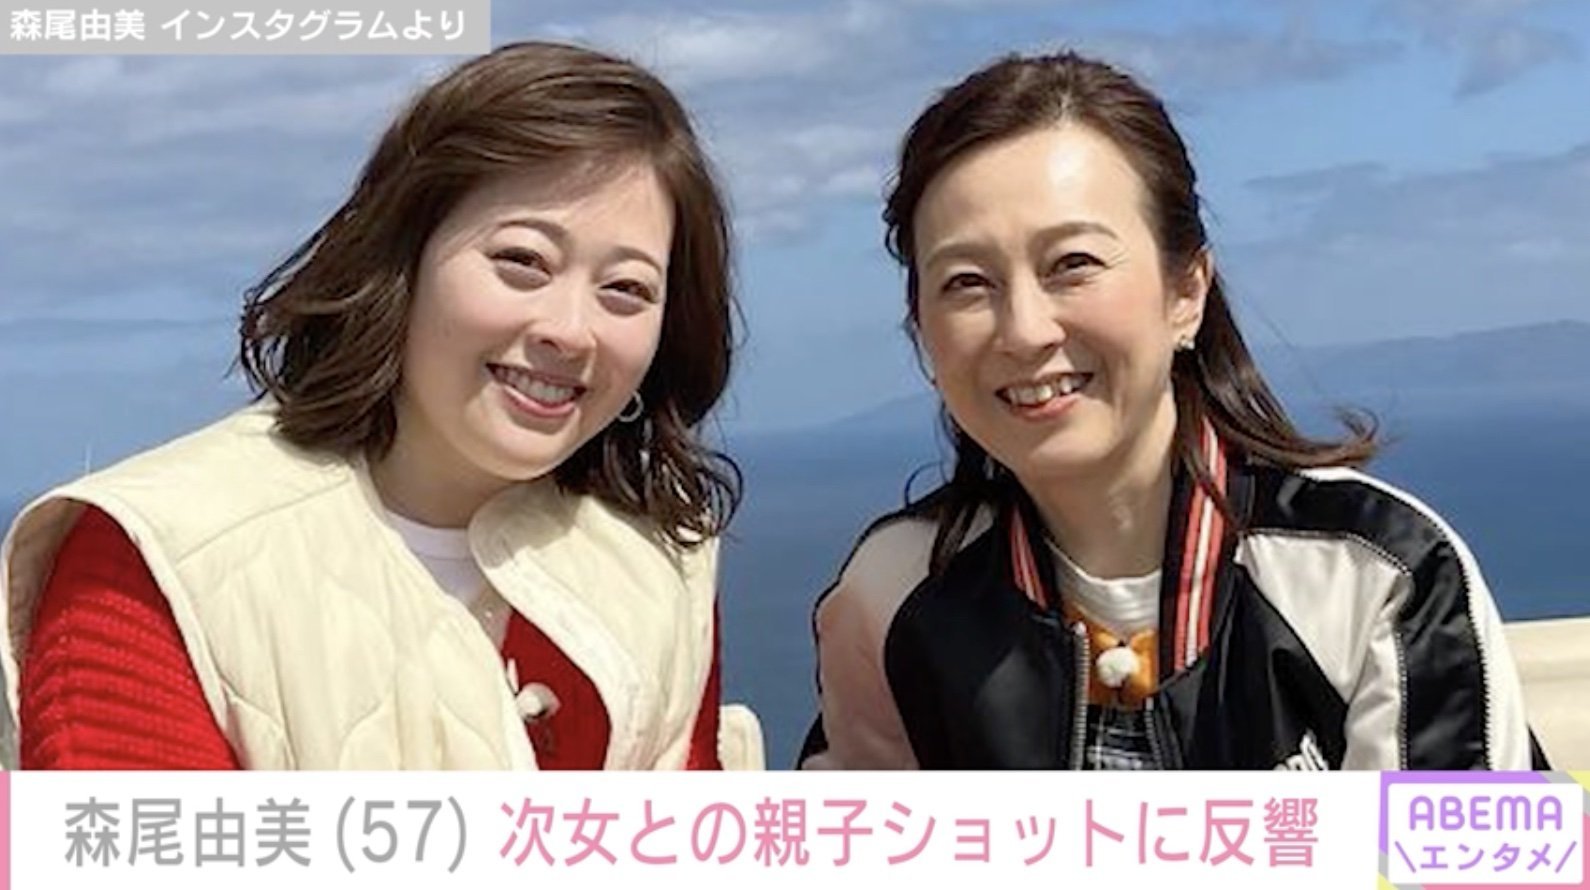 森尾由美、25歳次女との親子ショットに反響「美人姉妹ですね」「そっくりだわー」(ABEMA TIMES)